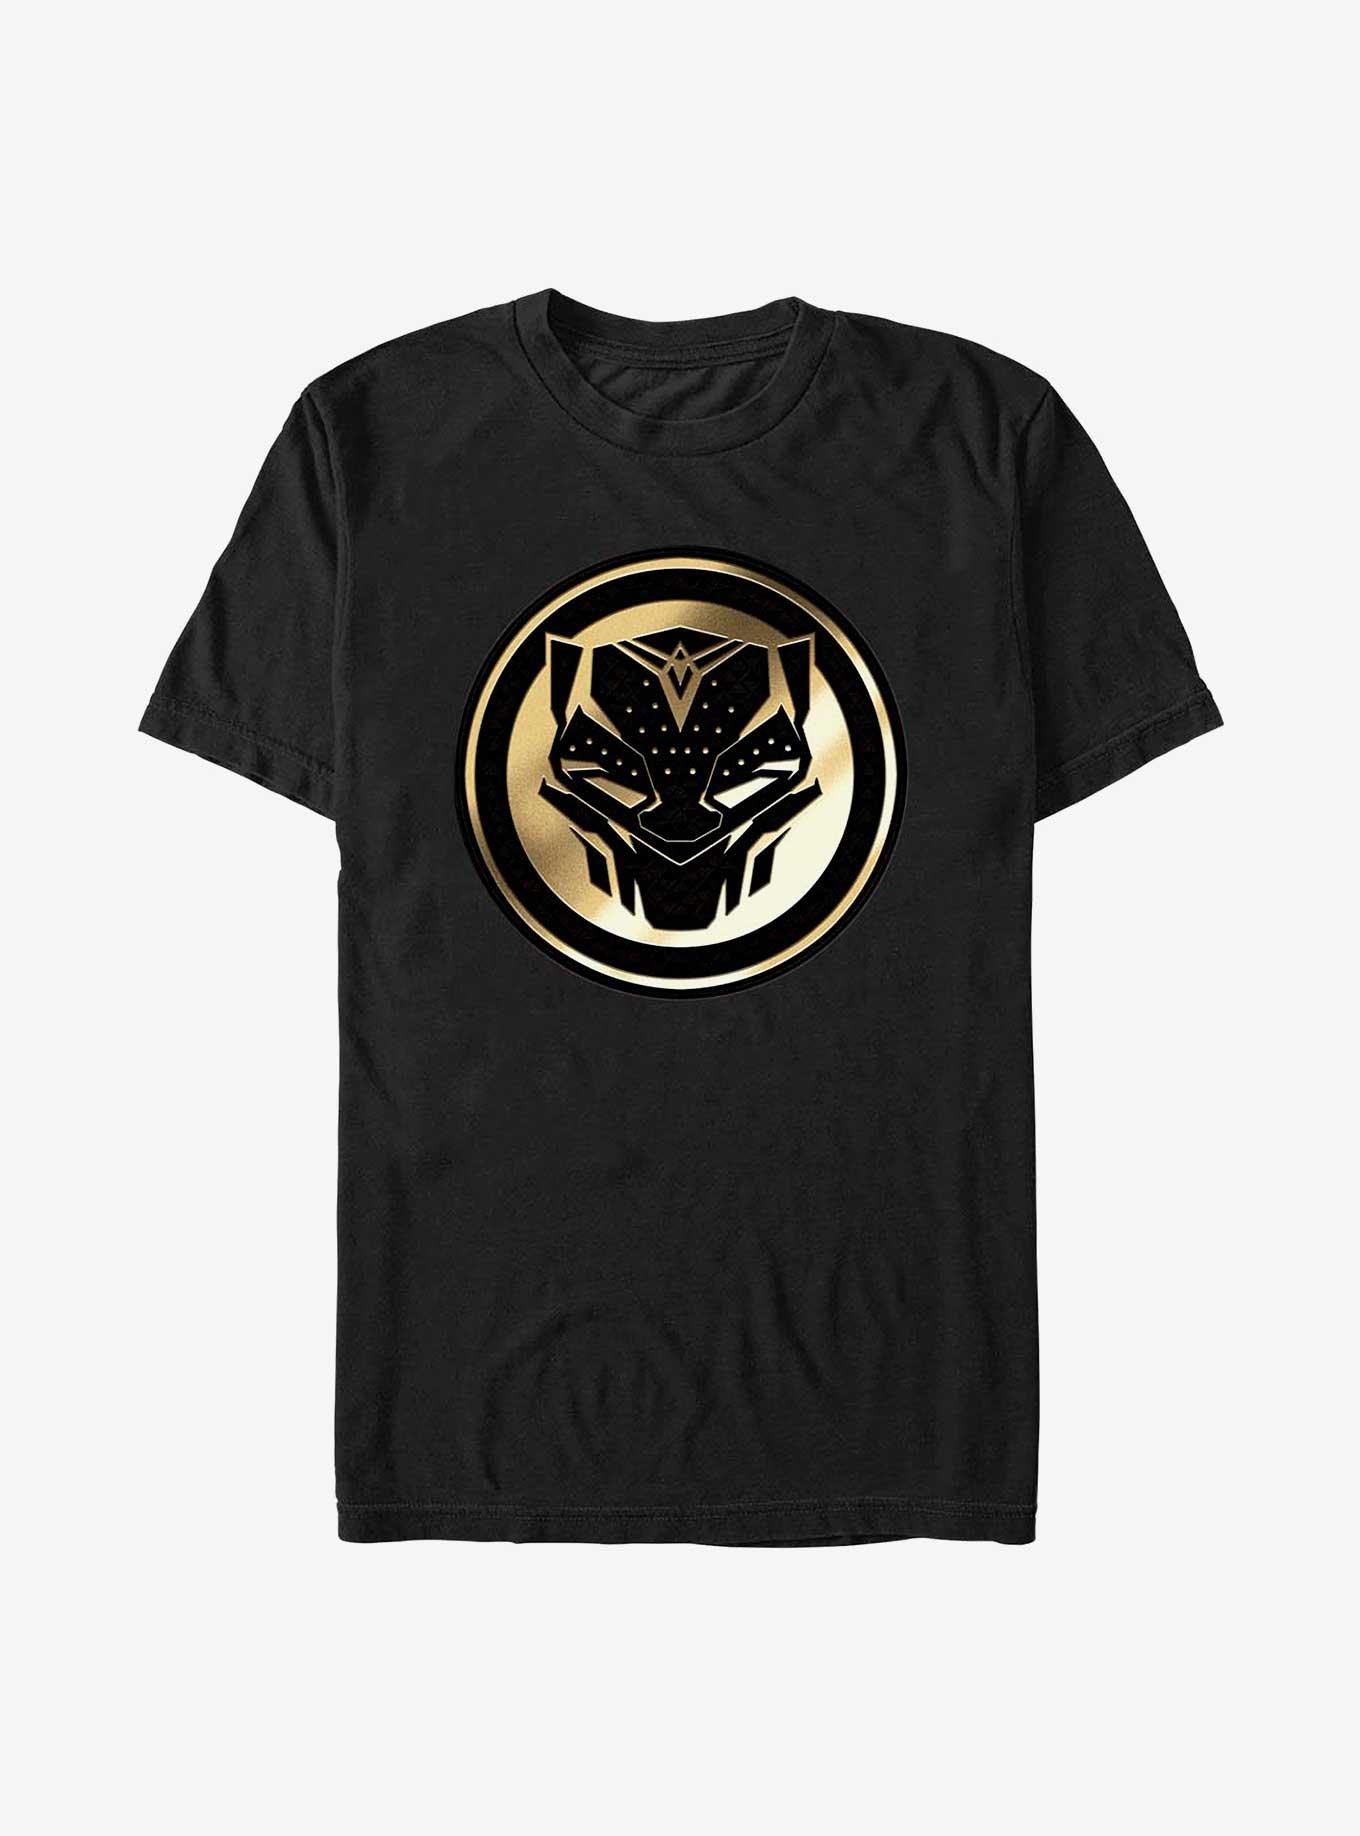 Marvel Black Panther: Wakanda Forever Golden Emblem T-Shirt, BLACK, hi-res